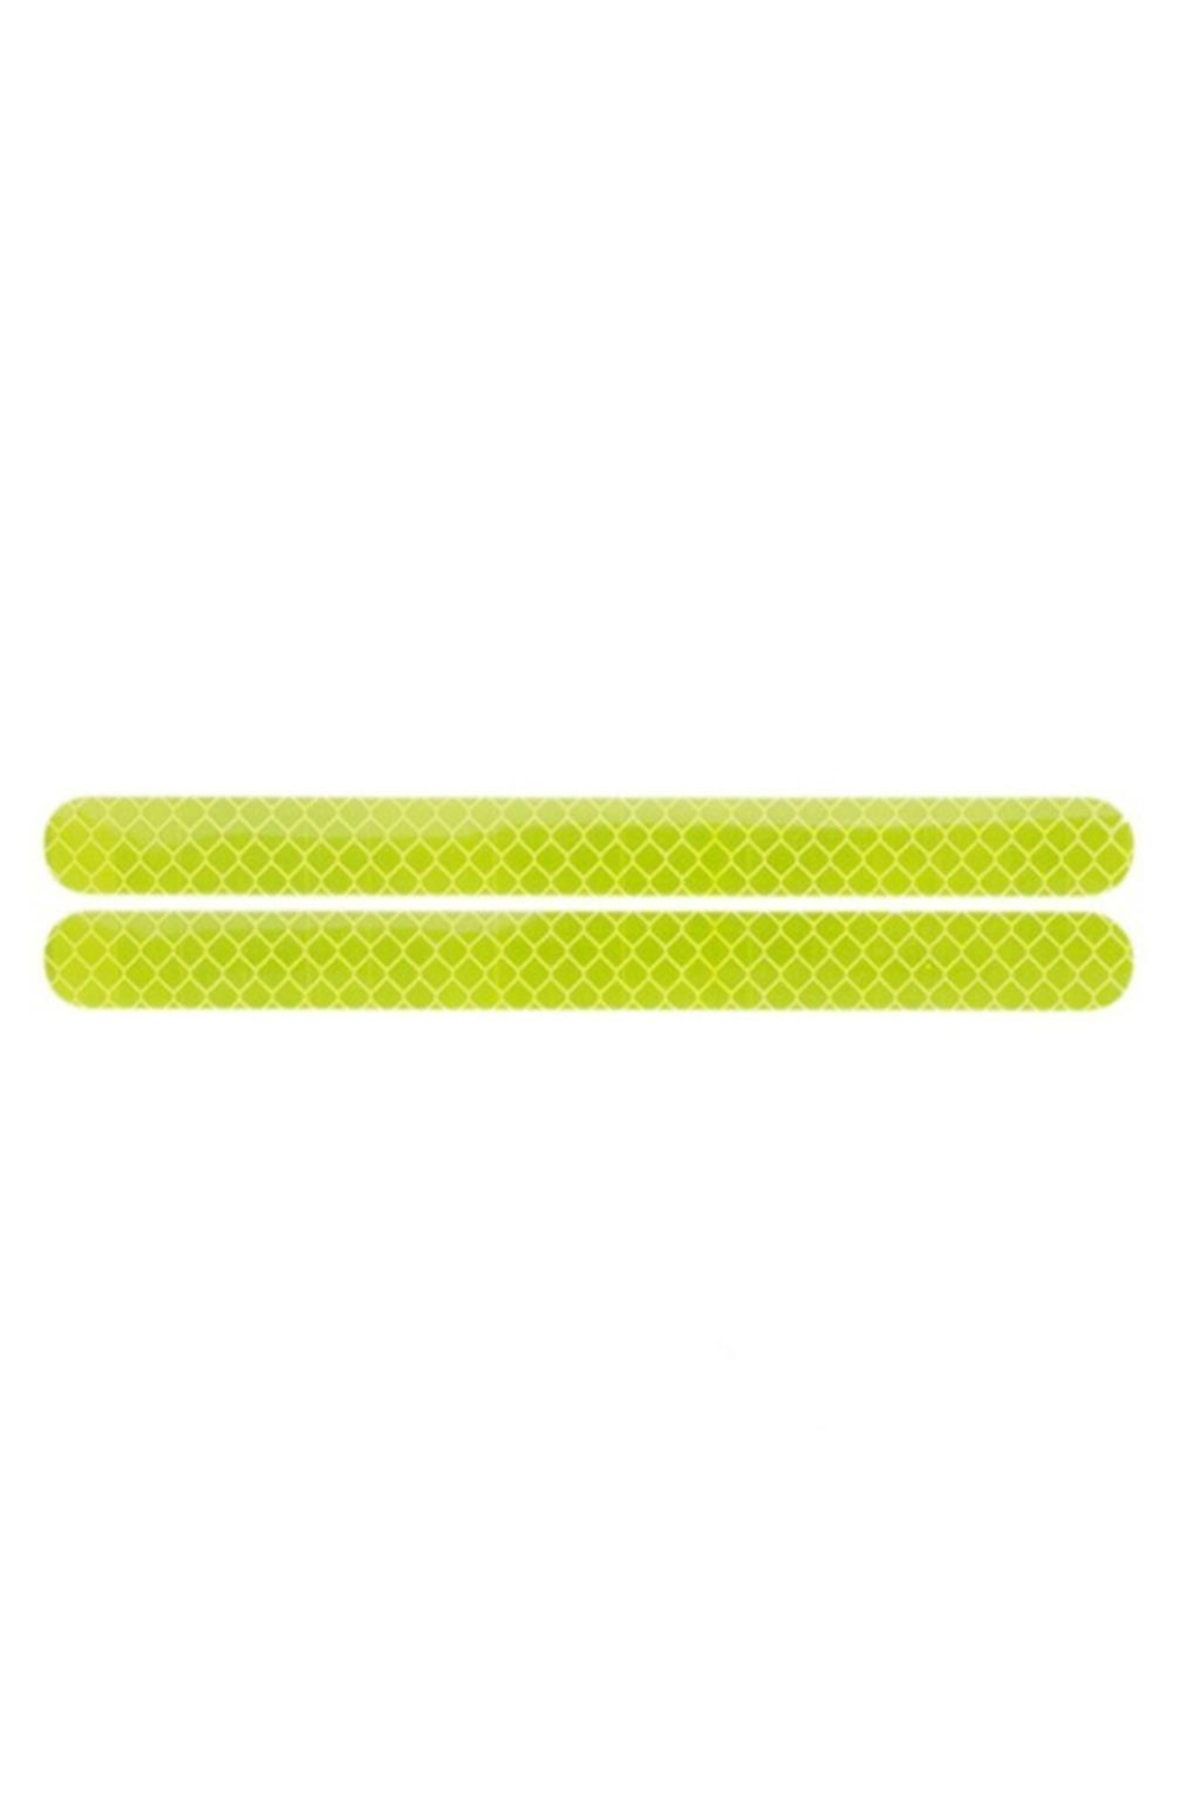 Knmaster Oval Reflektörlü Yansıtıcı Sticker Etiket Fosforlu Sarı